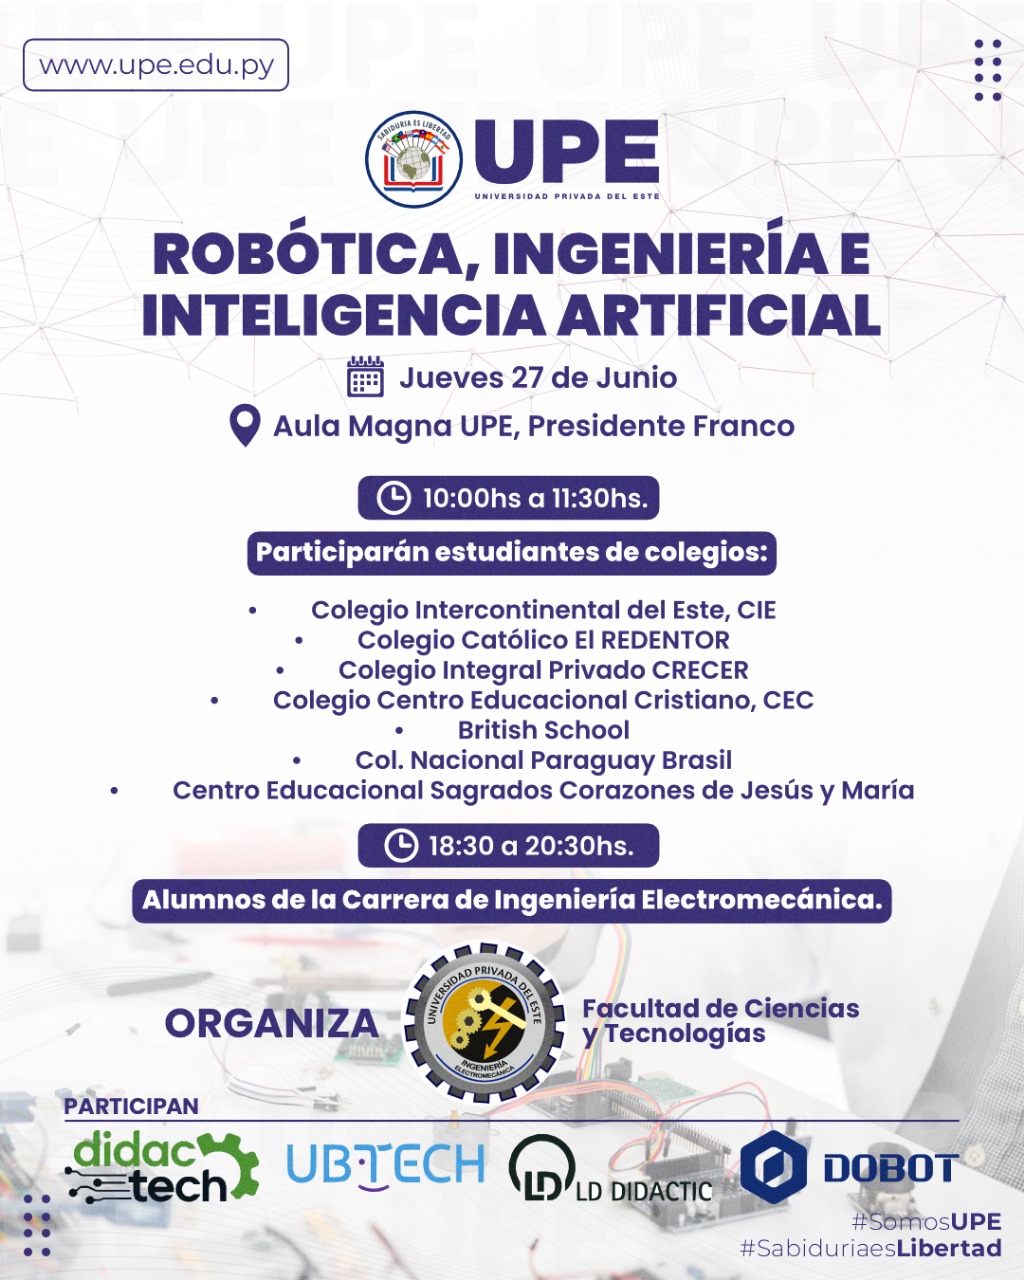 Robótica, Ingeniería e Inteligencia Artificial - Facultad de Ciencias y Tecnologías